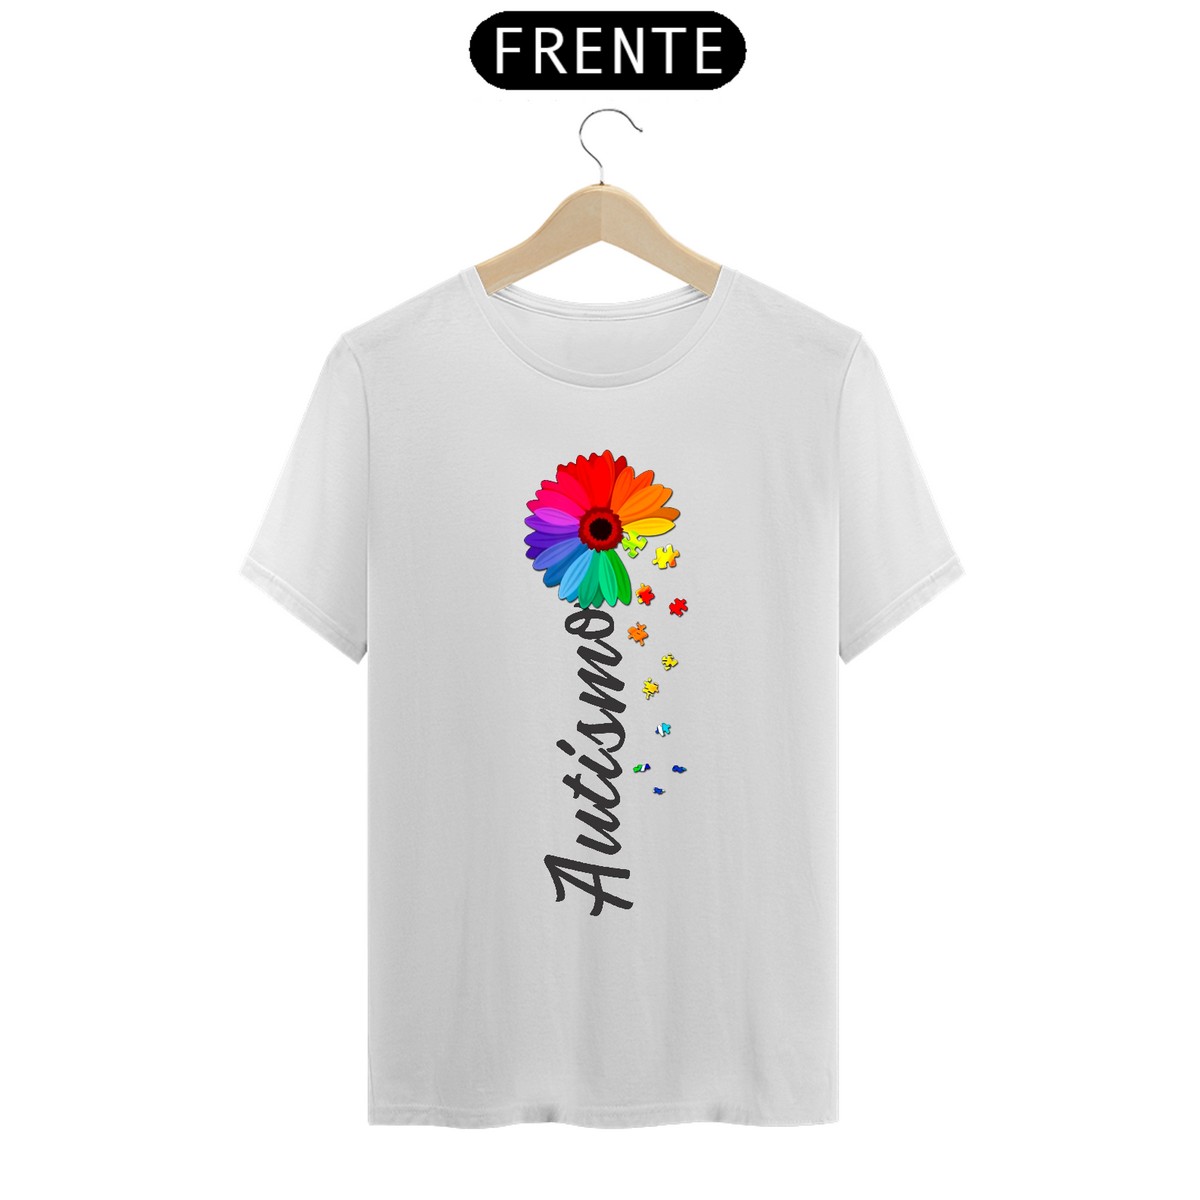 Nome do produto: T-shirt - autismo (autismo em forma de flor)